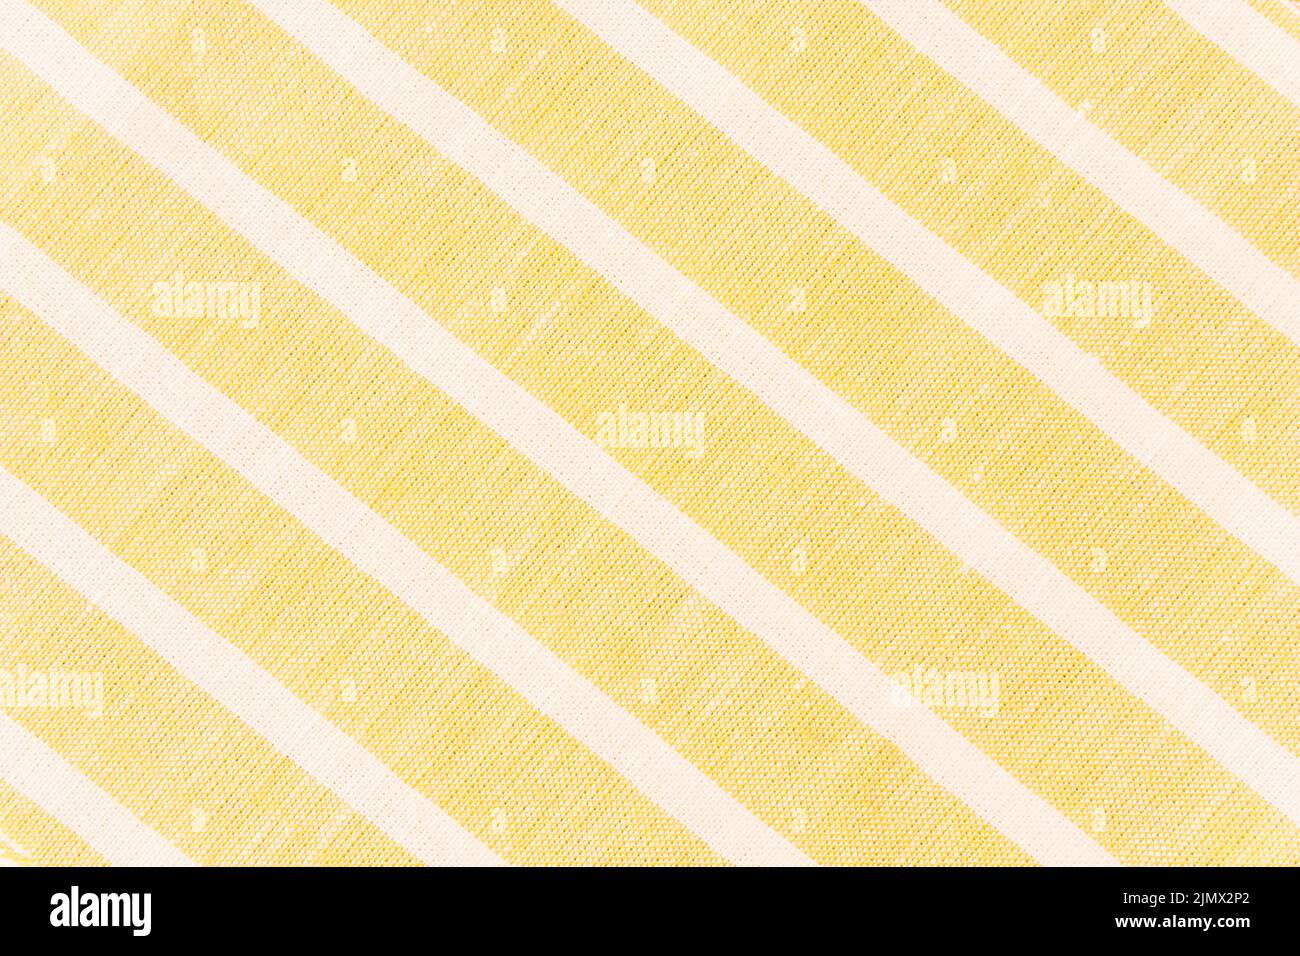 White diagonal line yellow fabric Stock Photo